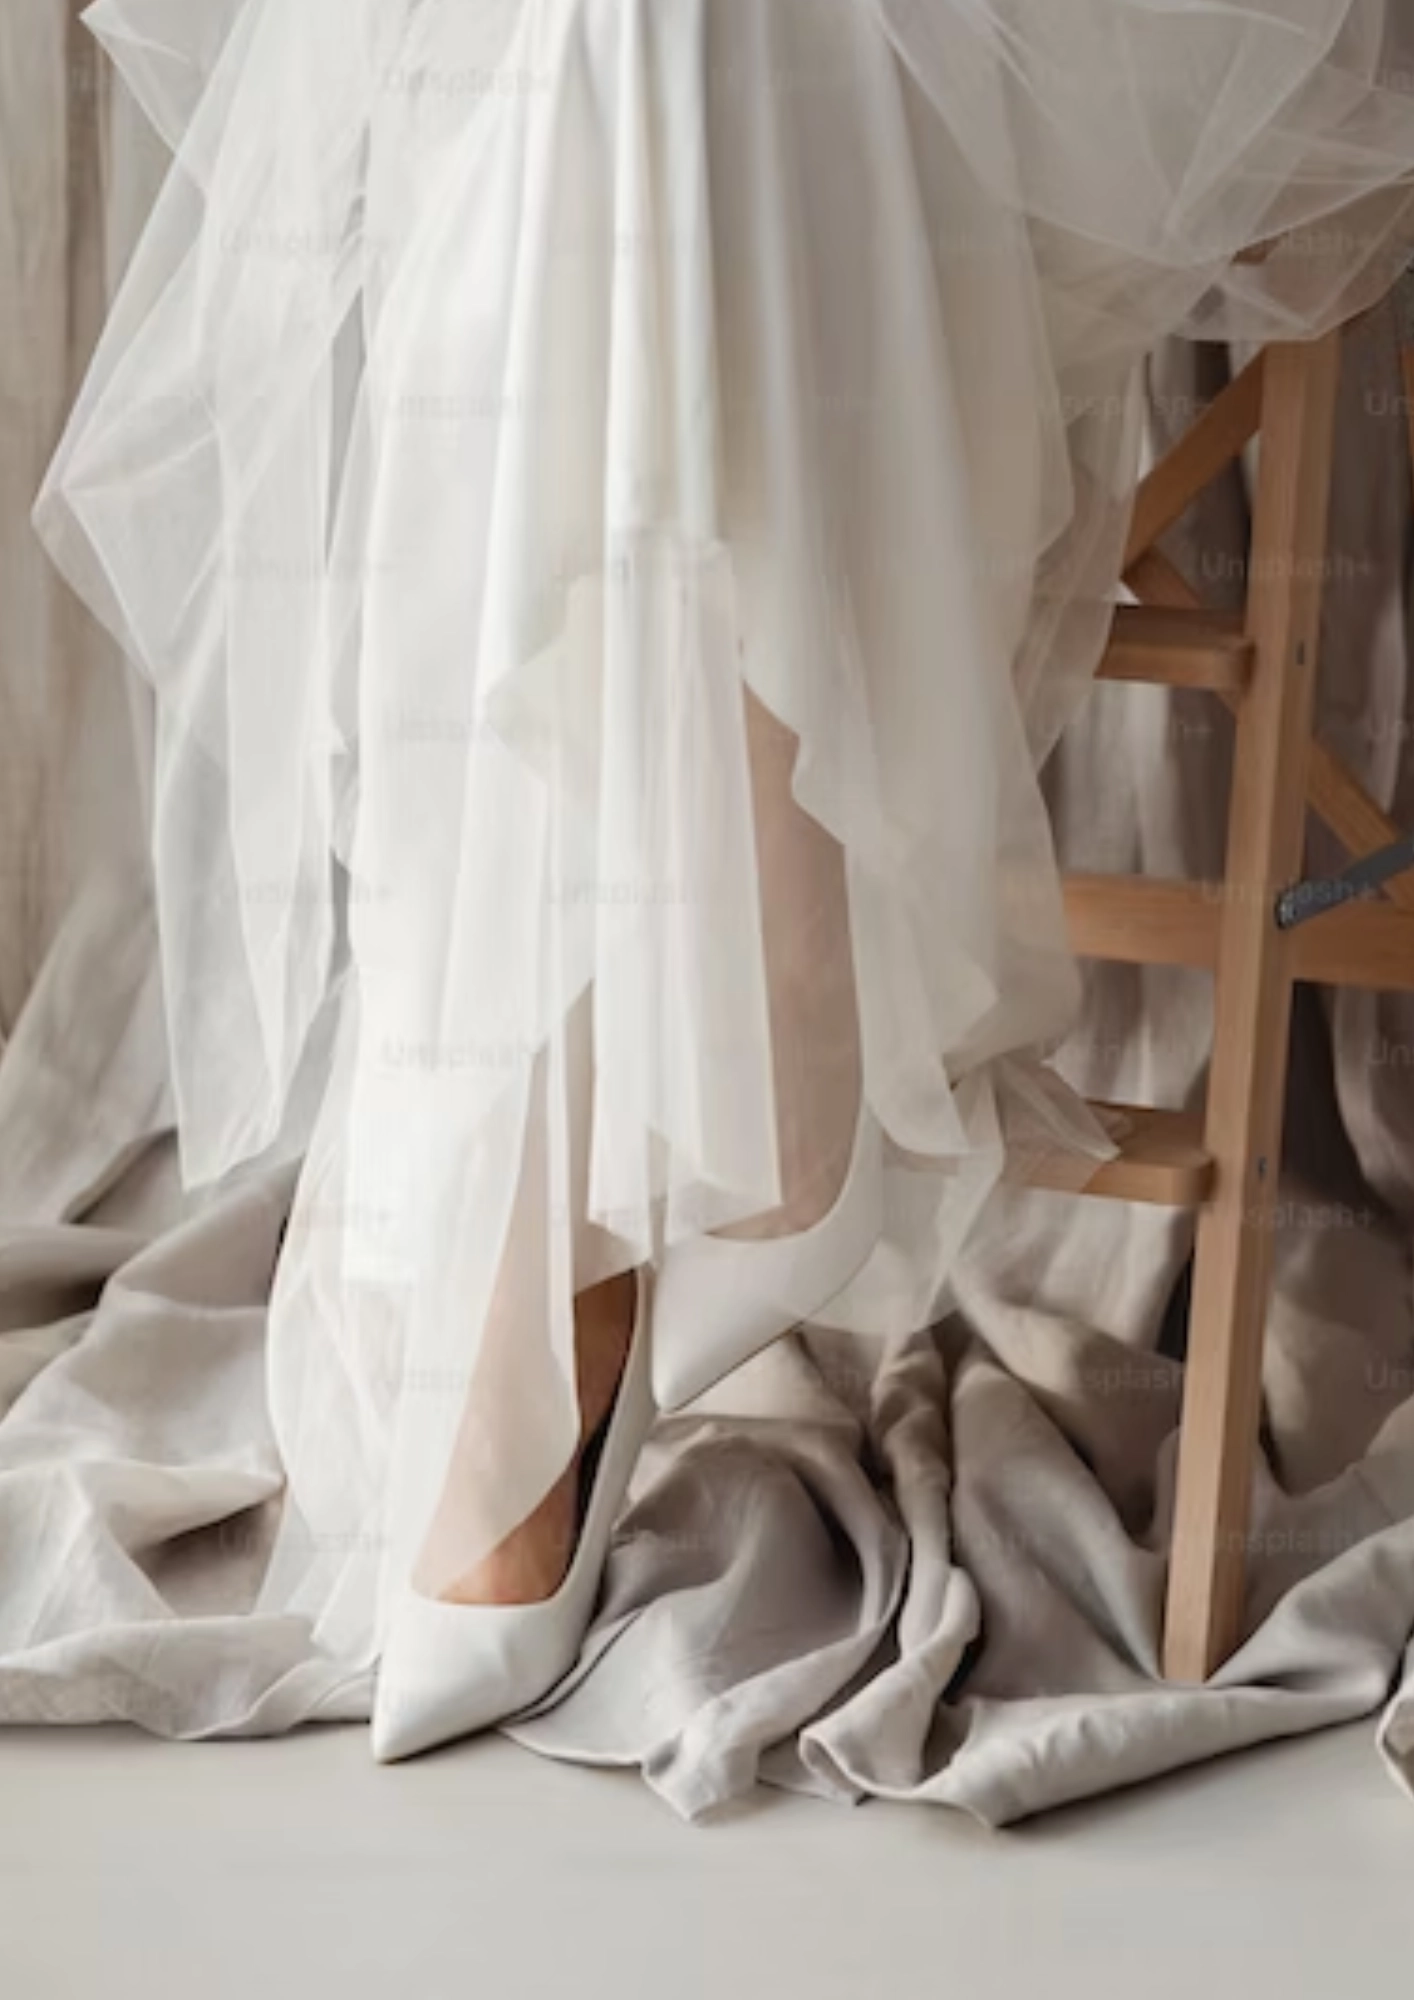 Mulher sentada em um banquino de madeira. A foto foca nos sapatos brancos e na barra do vestido de noiva. No chão, podemos ver um tecido beje.